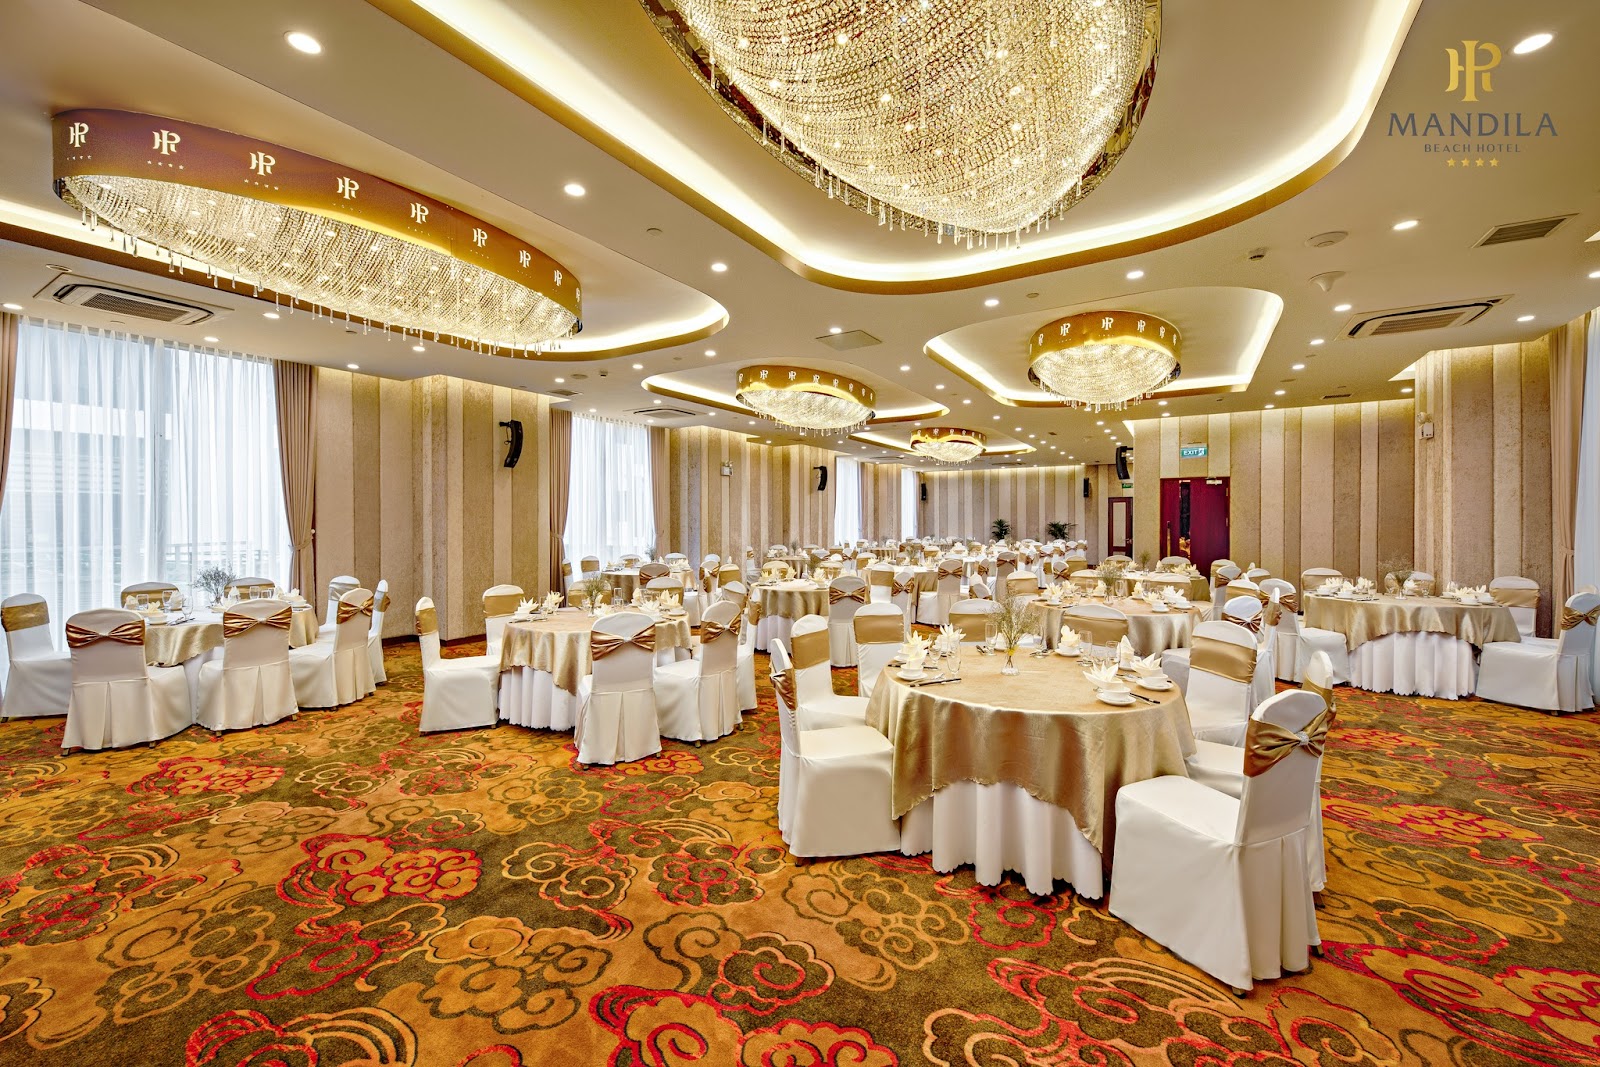 Organization Business Events at Da Nang Hotel 